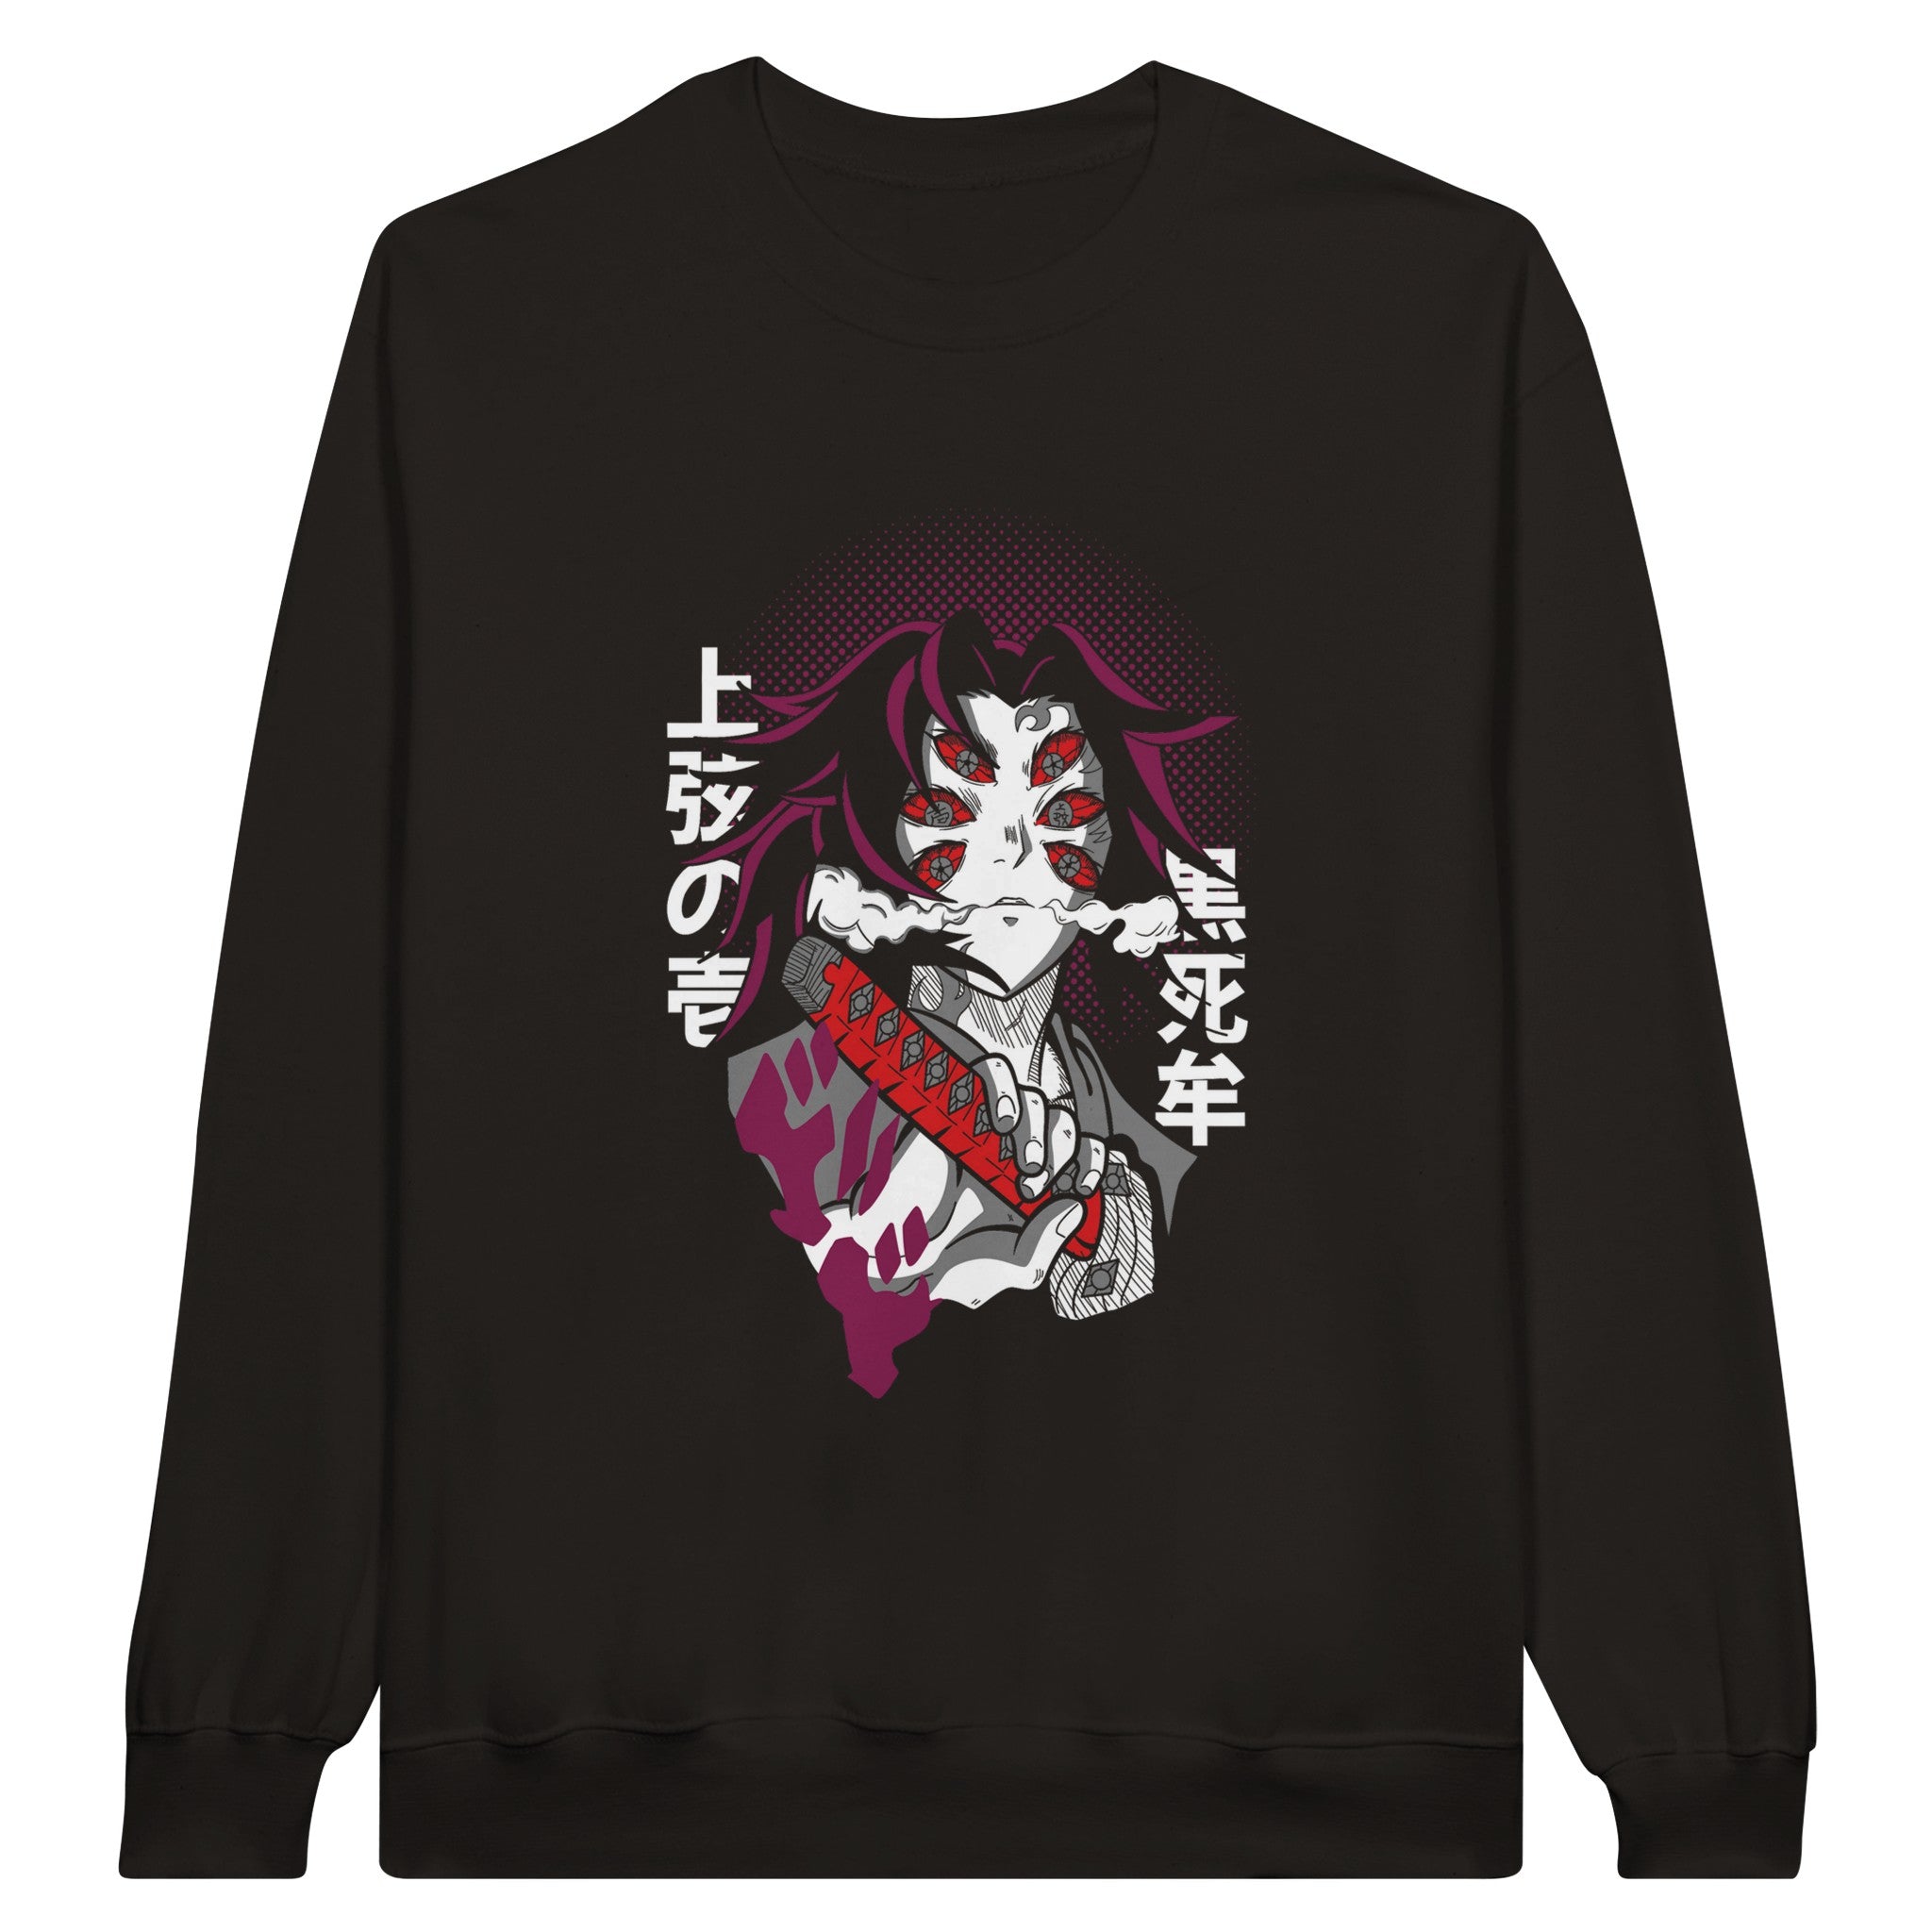 shop and buy demon slayer anime clothing Kokushibo sweatshirt/longsleeve/jumper